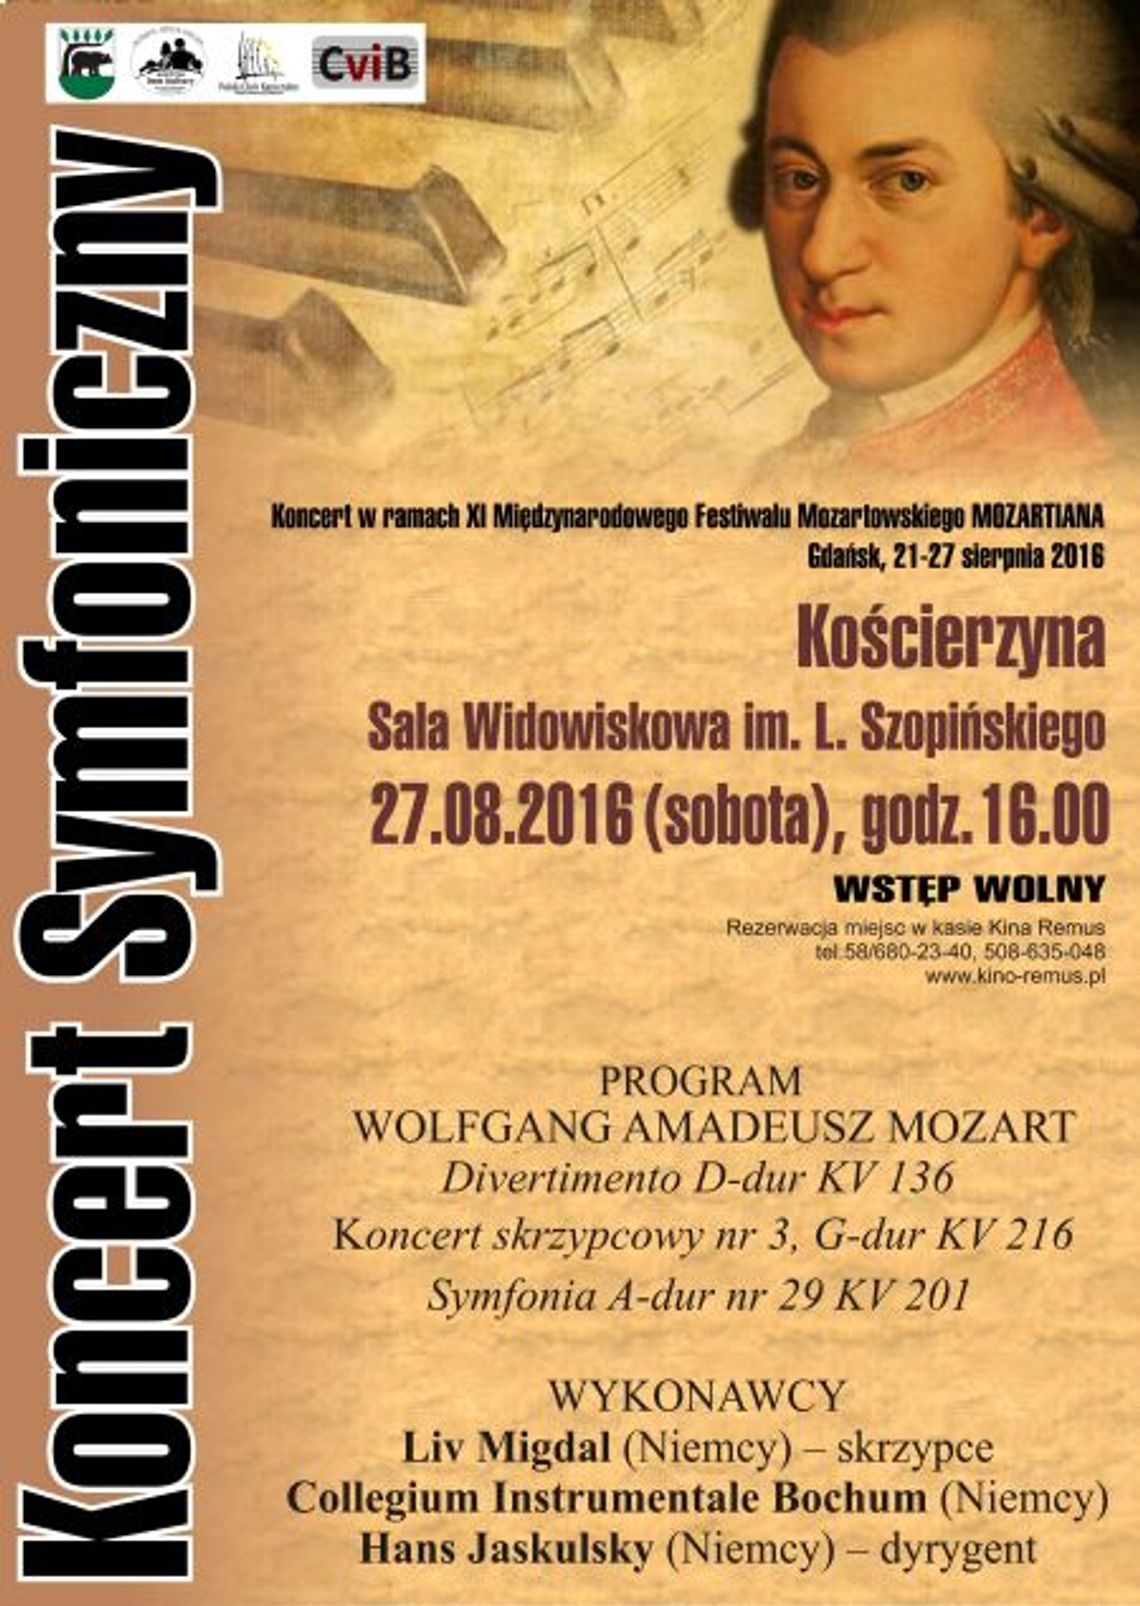 KONCERT SYMFONICZNY w ramach XI Międzynarodowego Festiwalu Mozartowskiego MOZARTIADA